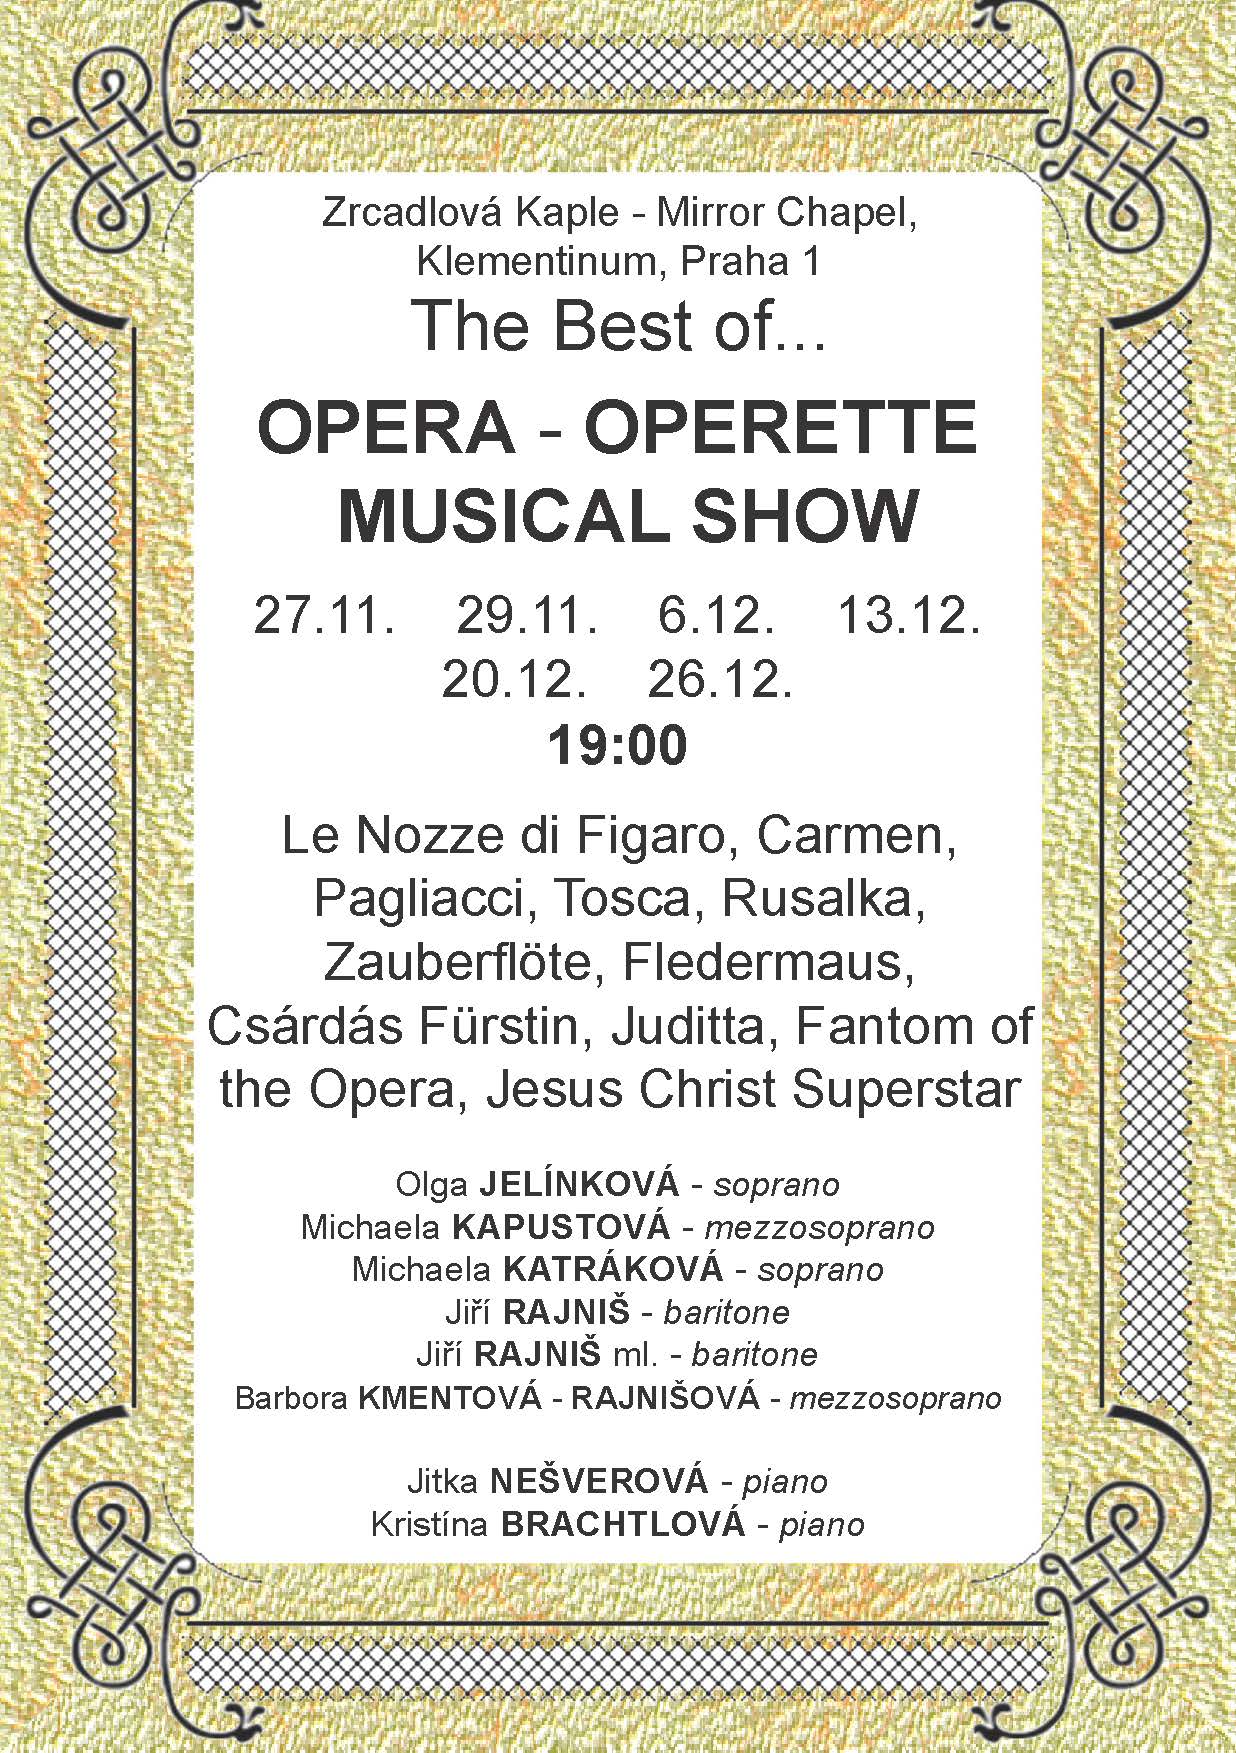 To nejlepší z oper, operet a muzikálů...